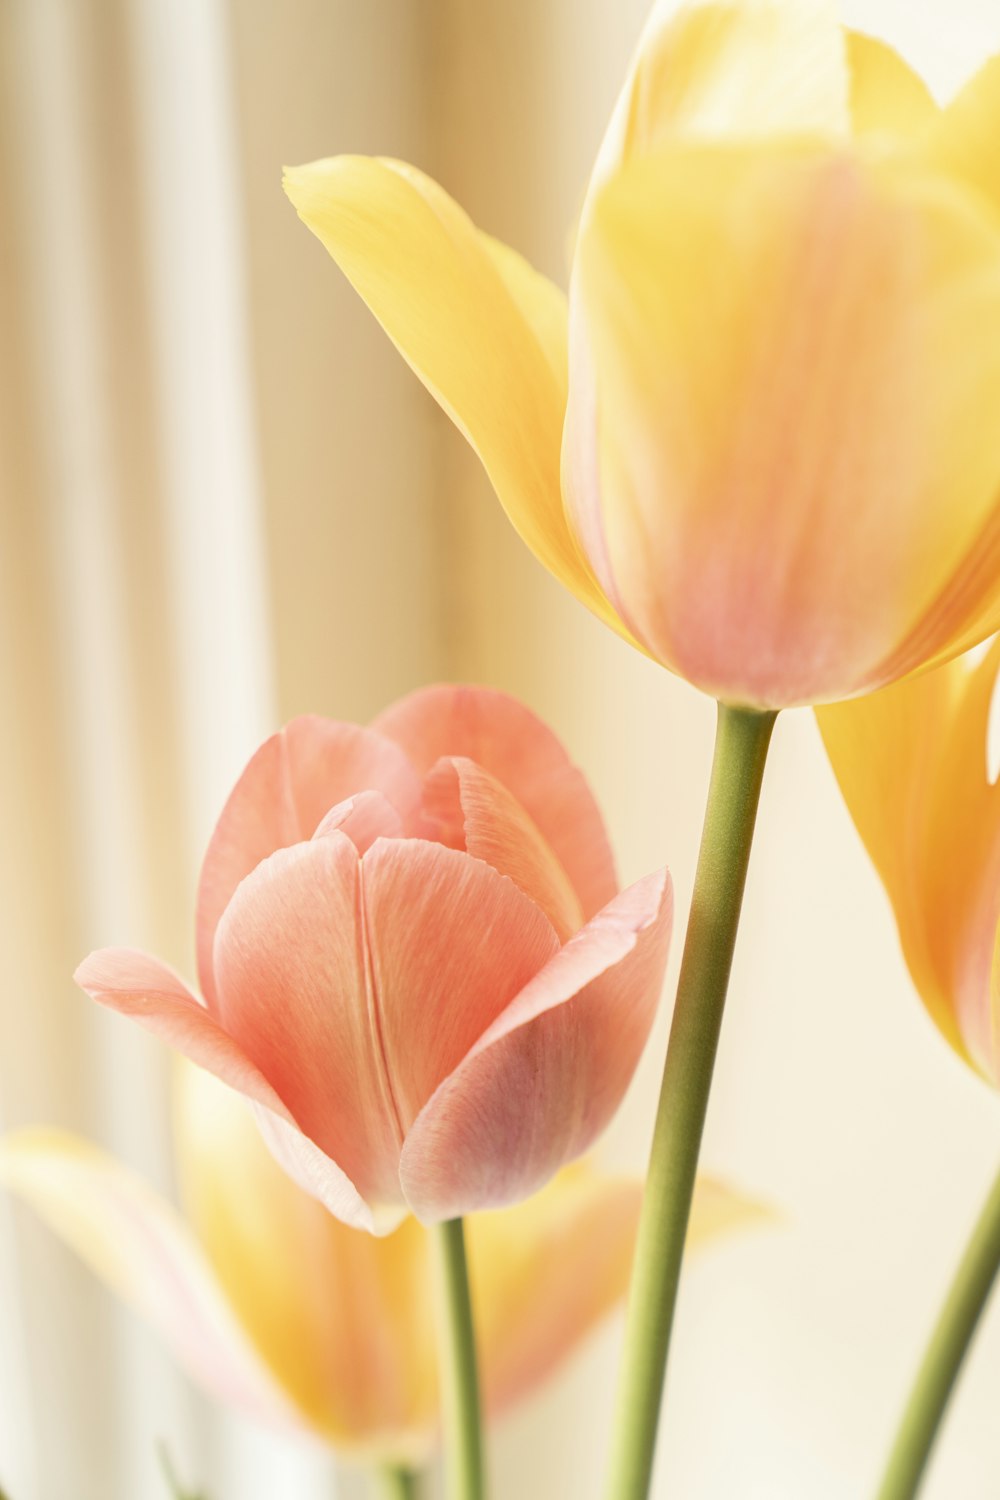 tulipán amarillo y rojo en flor foto de primer plano